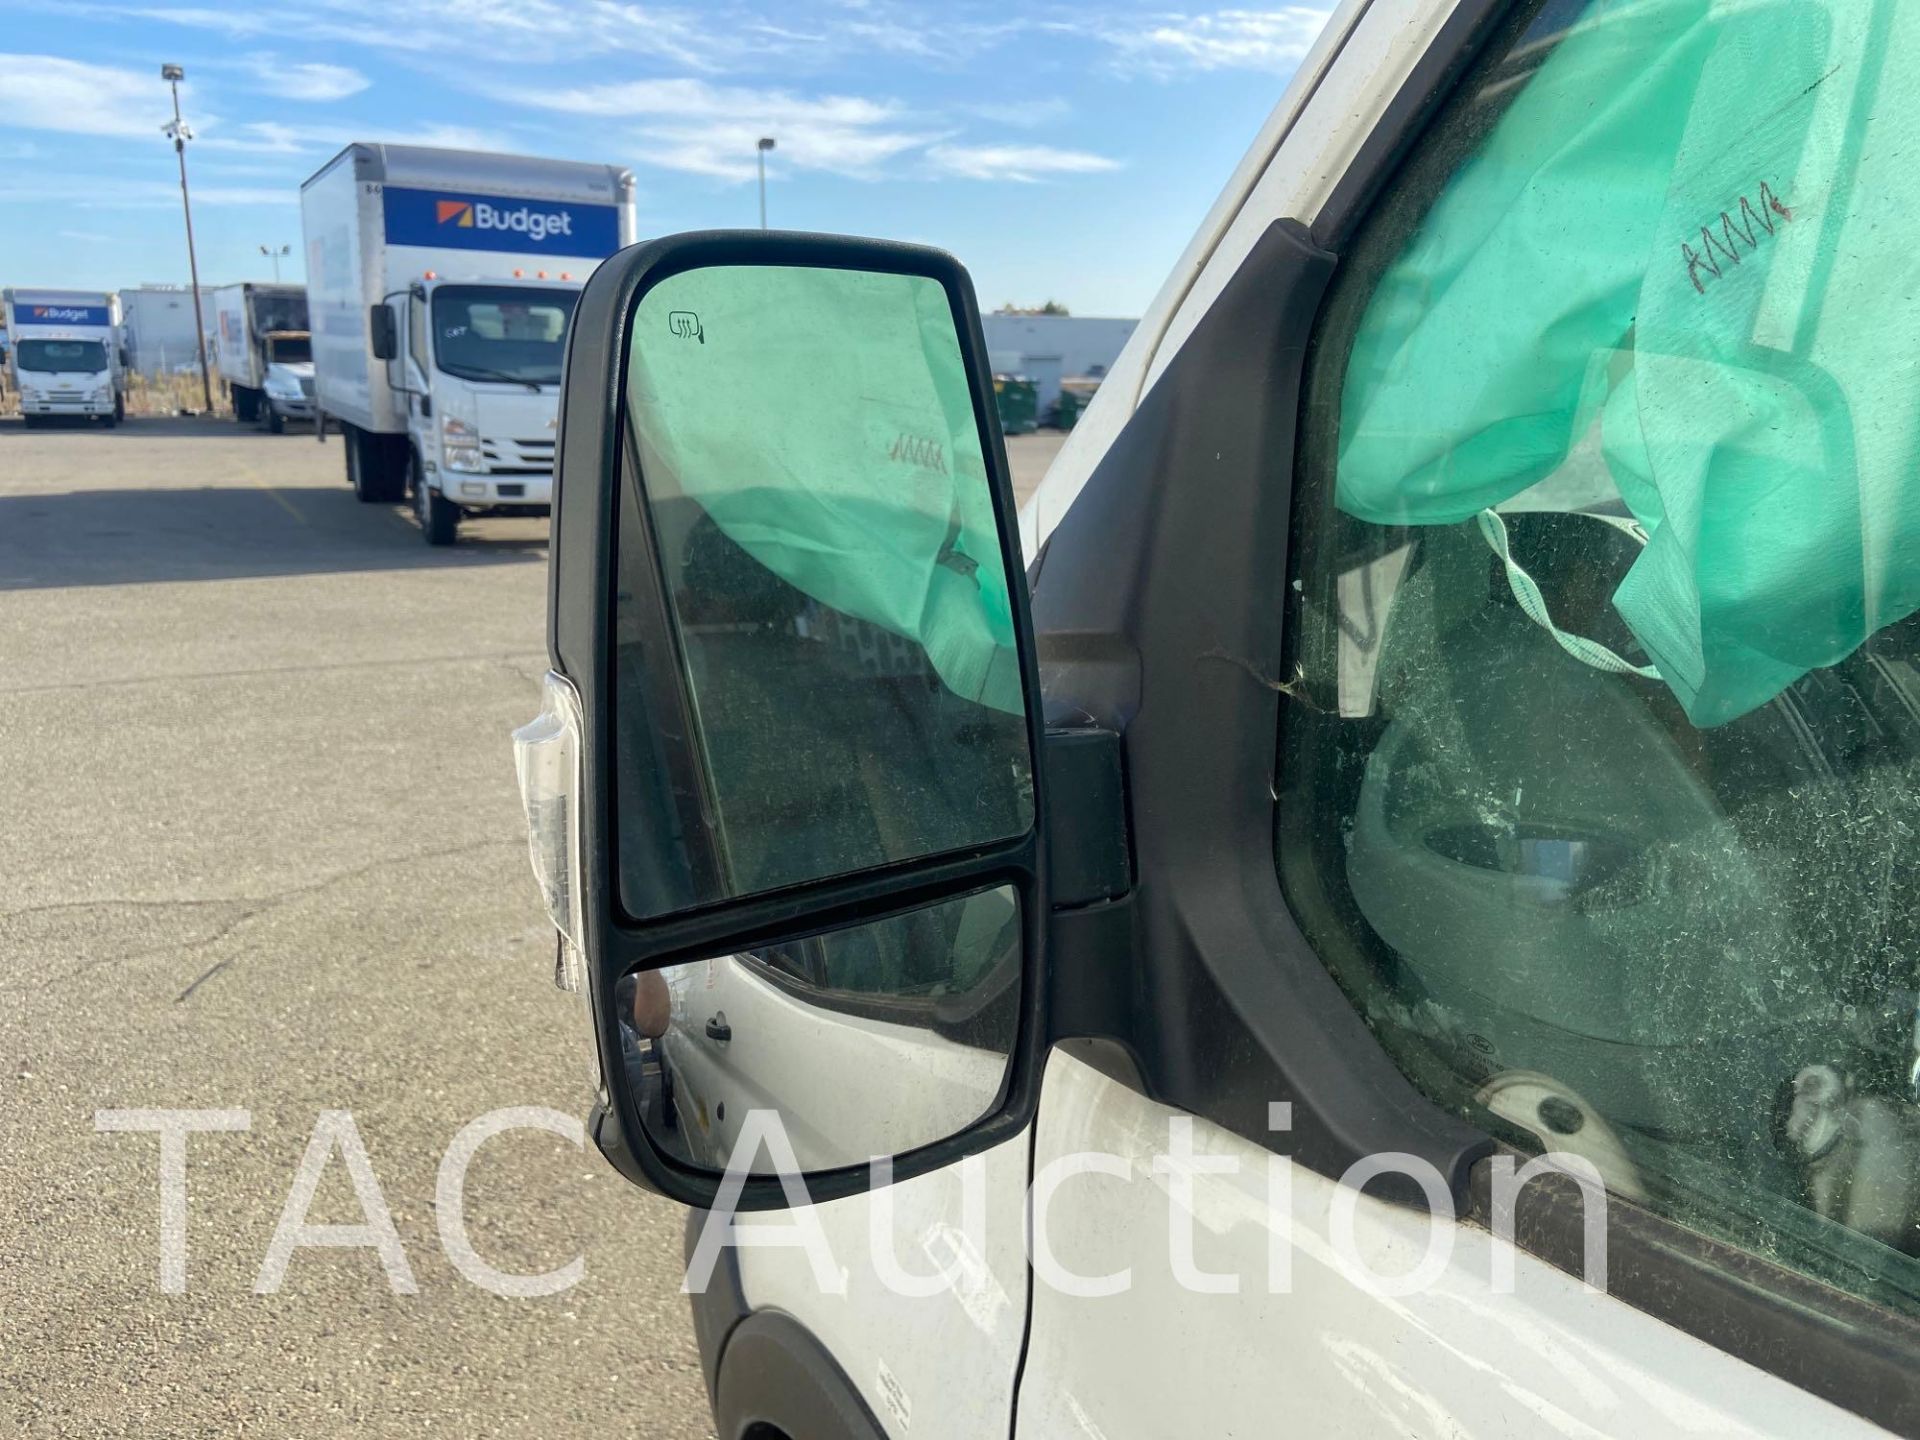 2019 Ford Transit 150 Cargo Van - Image 11 of 84